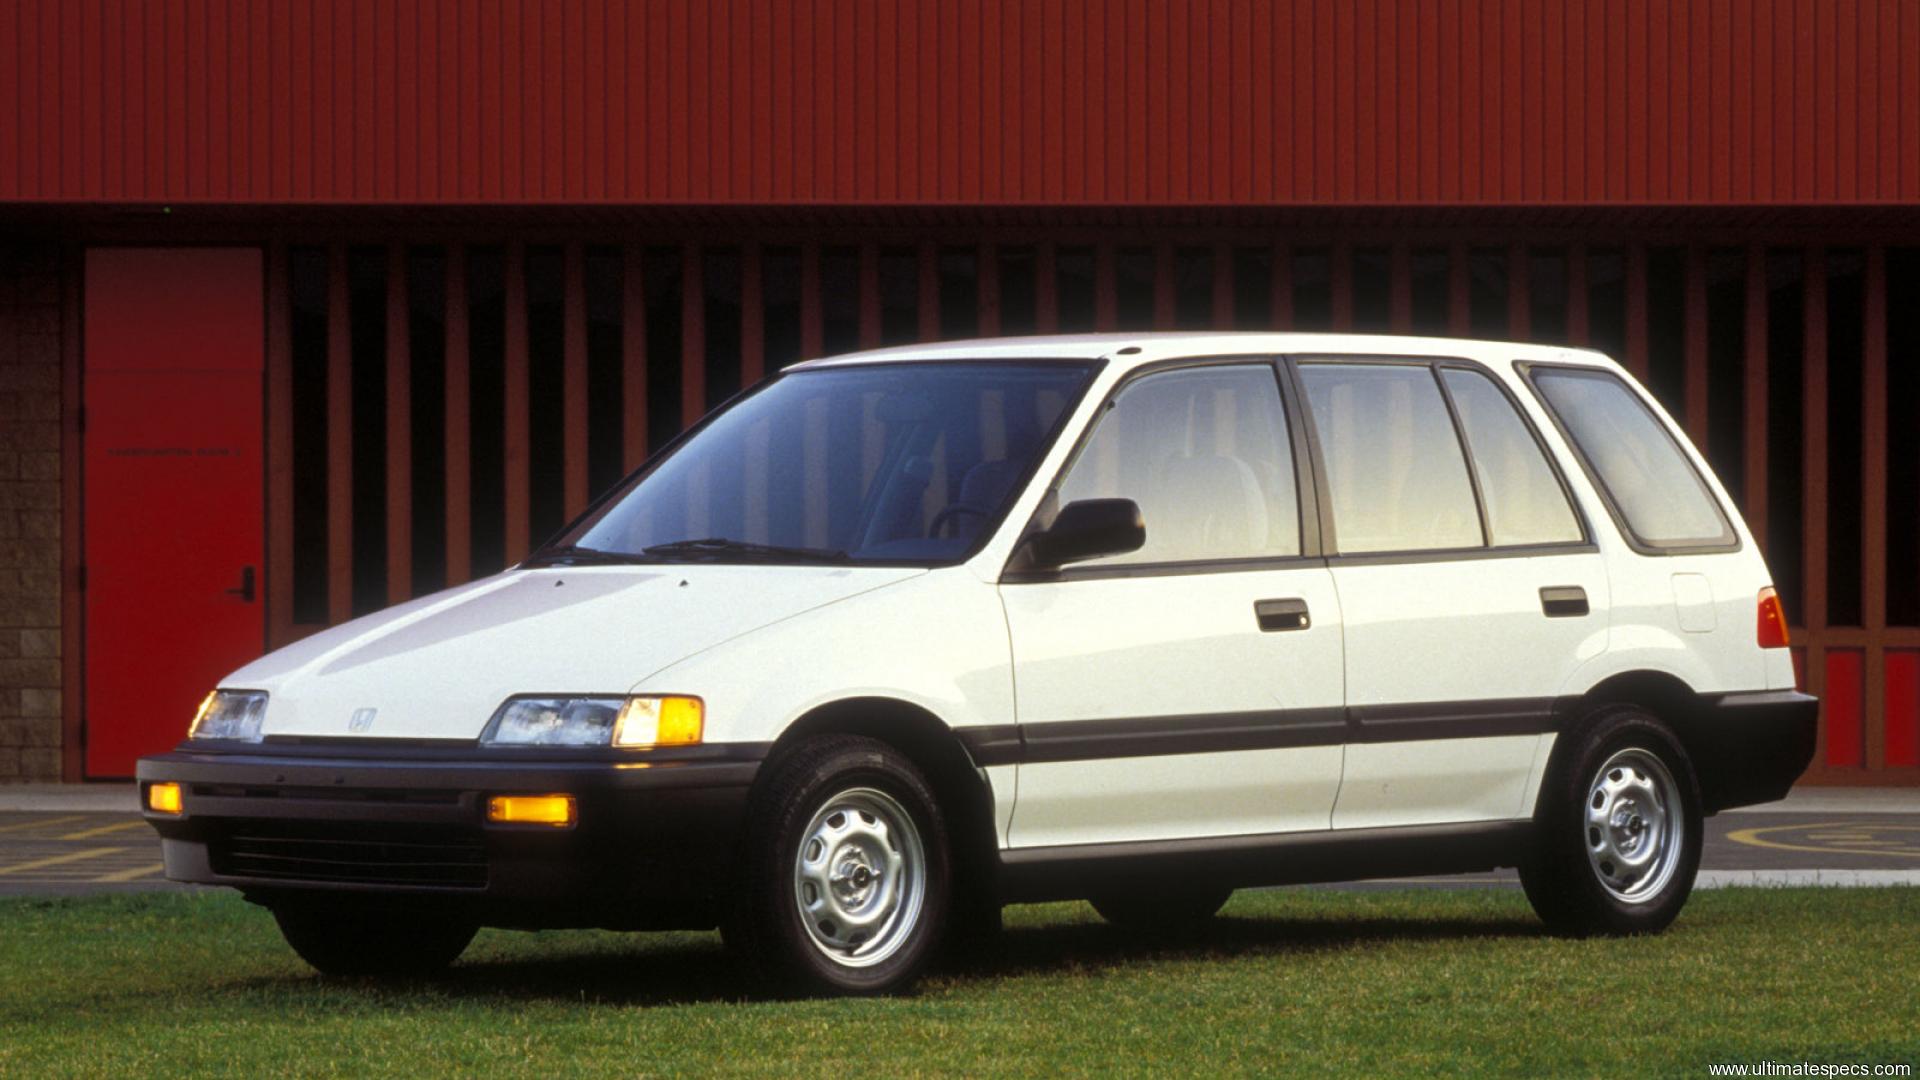 Civic shuttle. Honda Civic 1987 Wagon. Honda Civic 4 Shuttle. Honda Civic Shuttle 1987. Honda Civic Shuttle 1989.